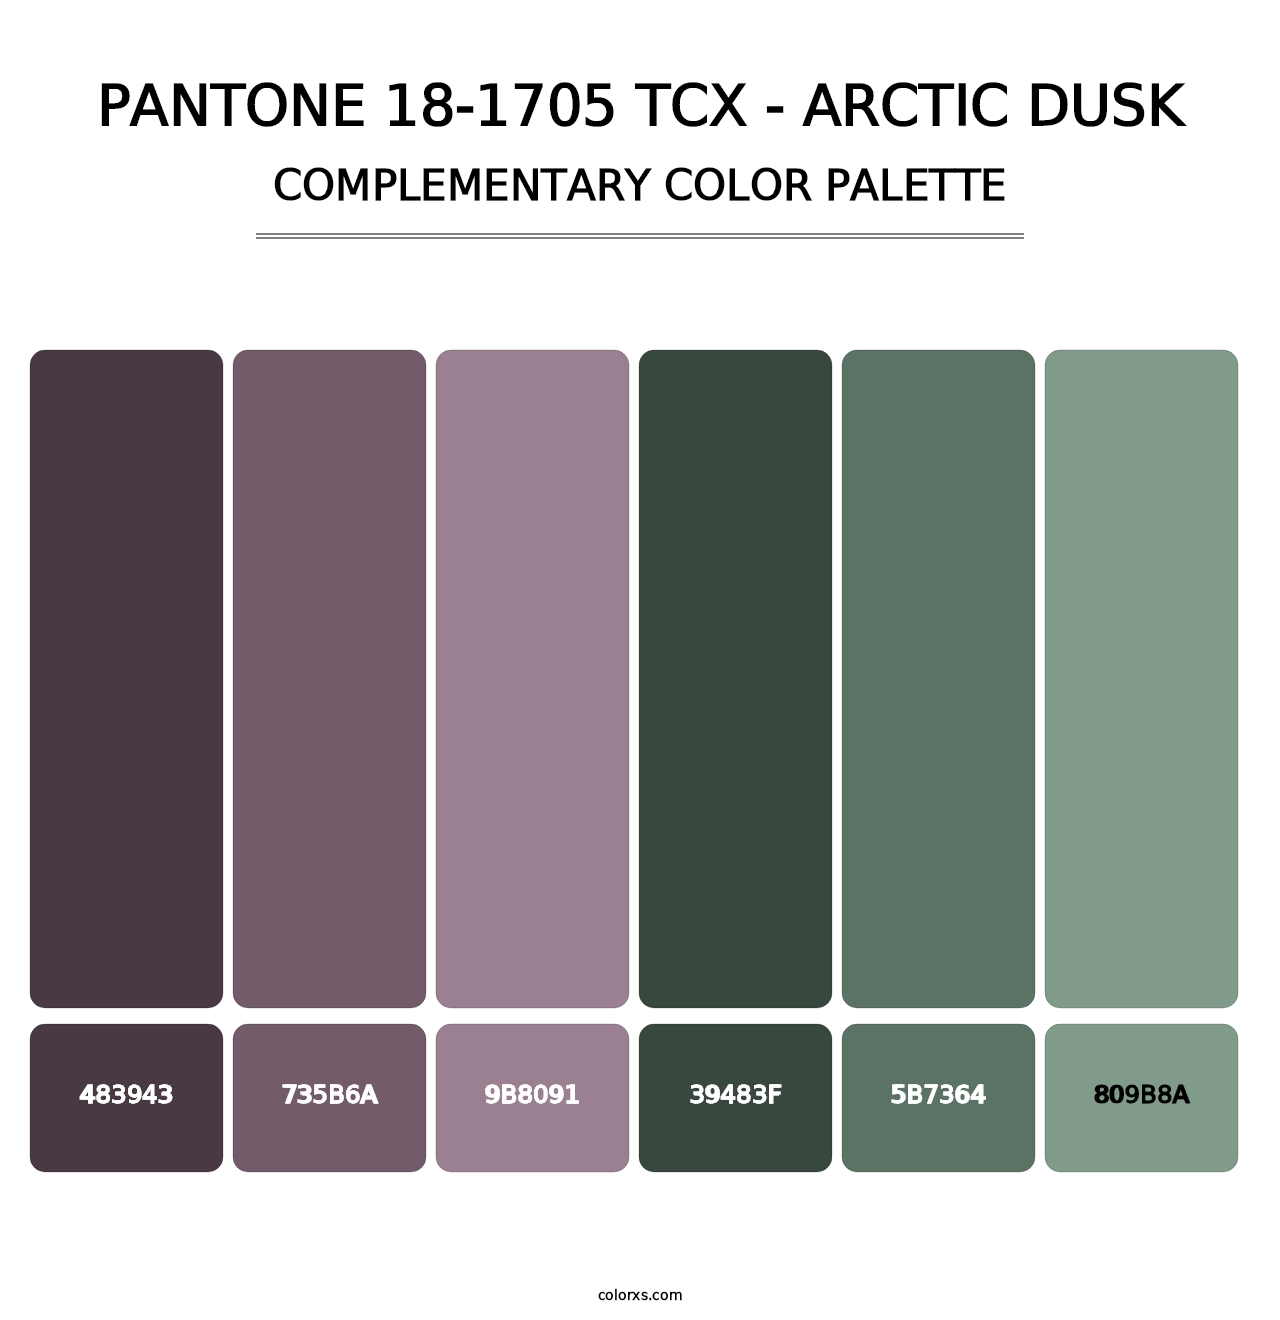 PANTONE 18-1705 TCX - Arctic Dusk - Complementary Color Palette